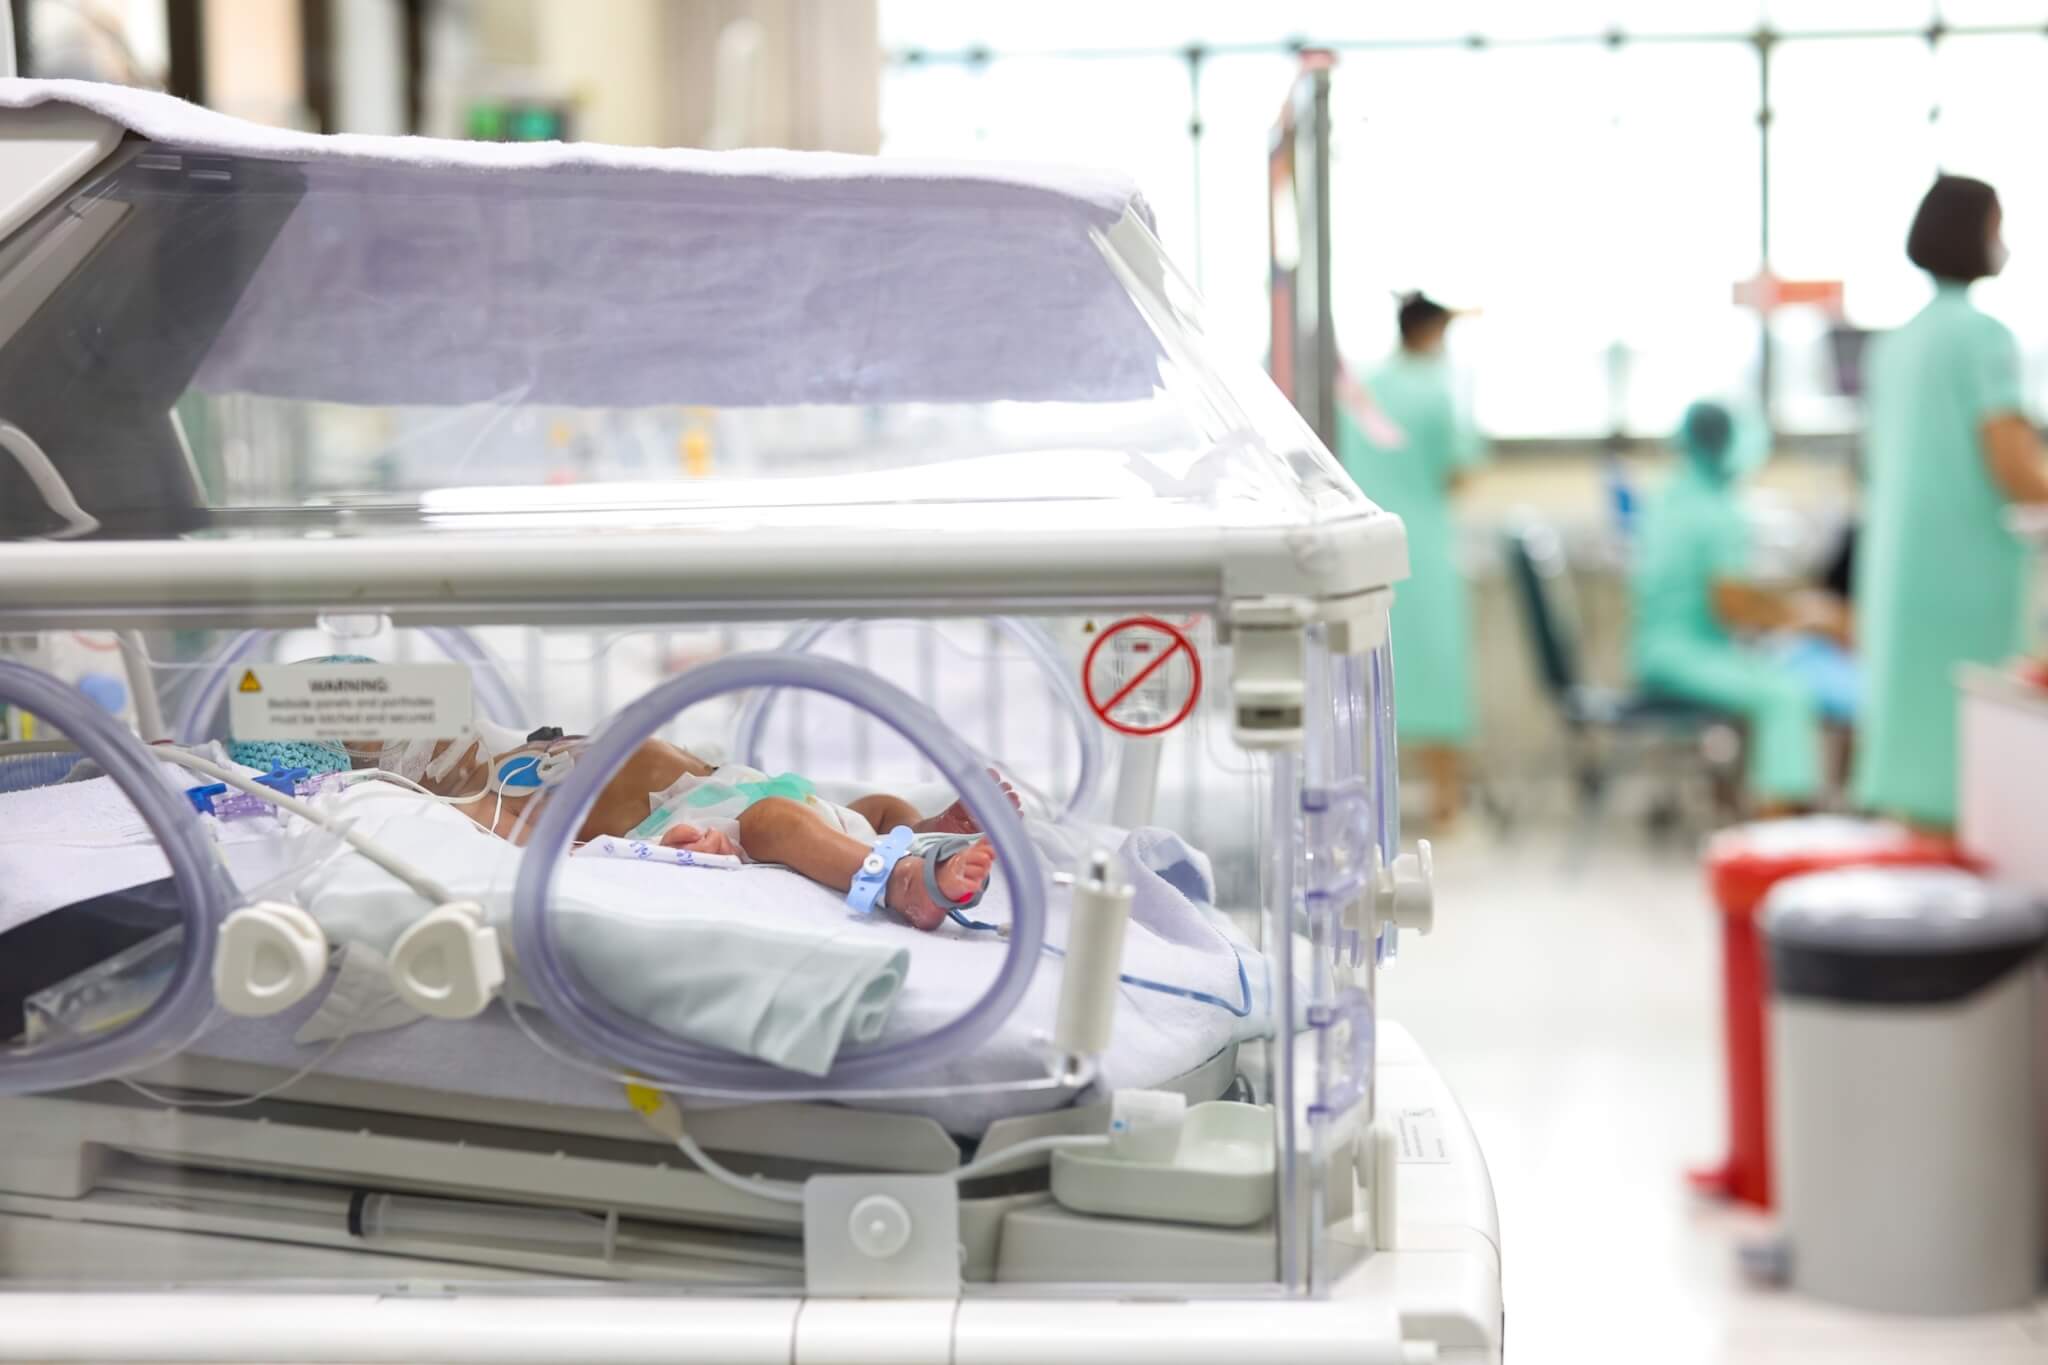 “ตู้อบ” ช่วยเหลือทารกคลอดก่อนกำหนด มูลนิธิโรงพยาบาลเด็ก กองทุนอาคารเฉลิมพระเกียรติฯ